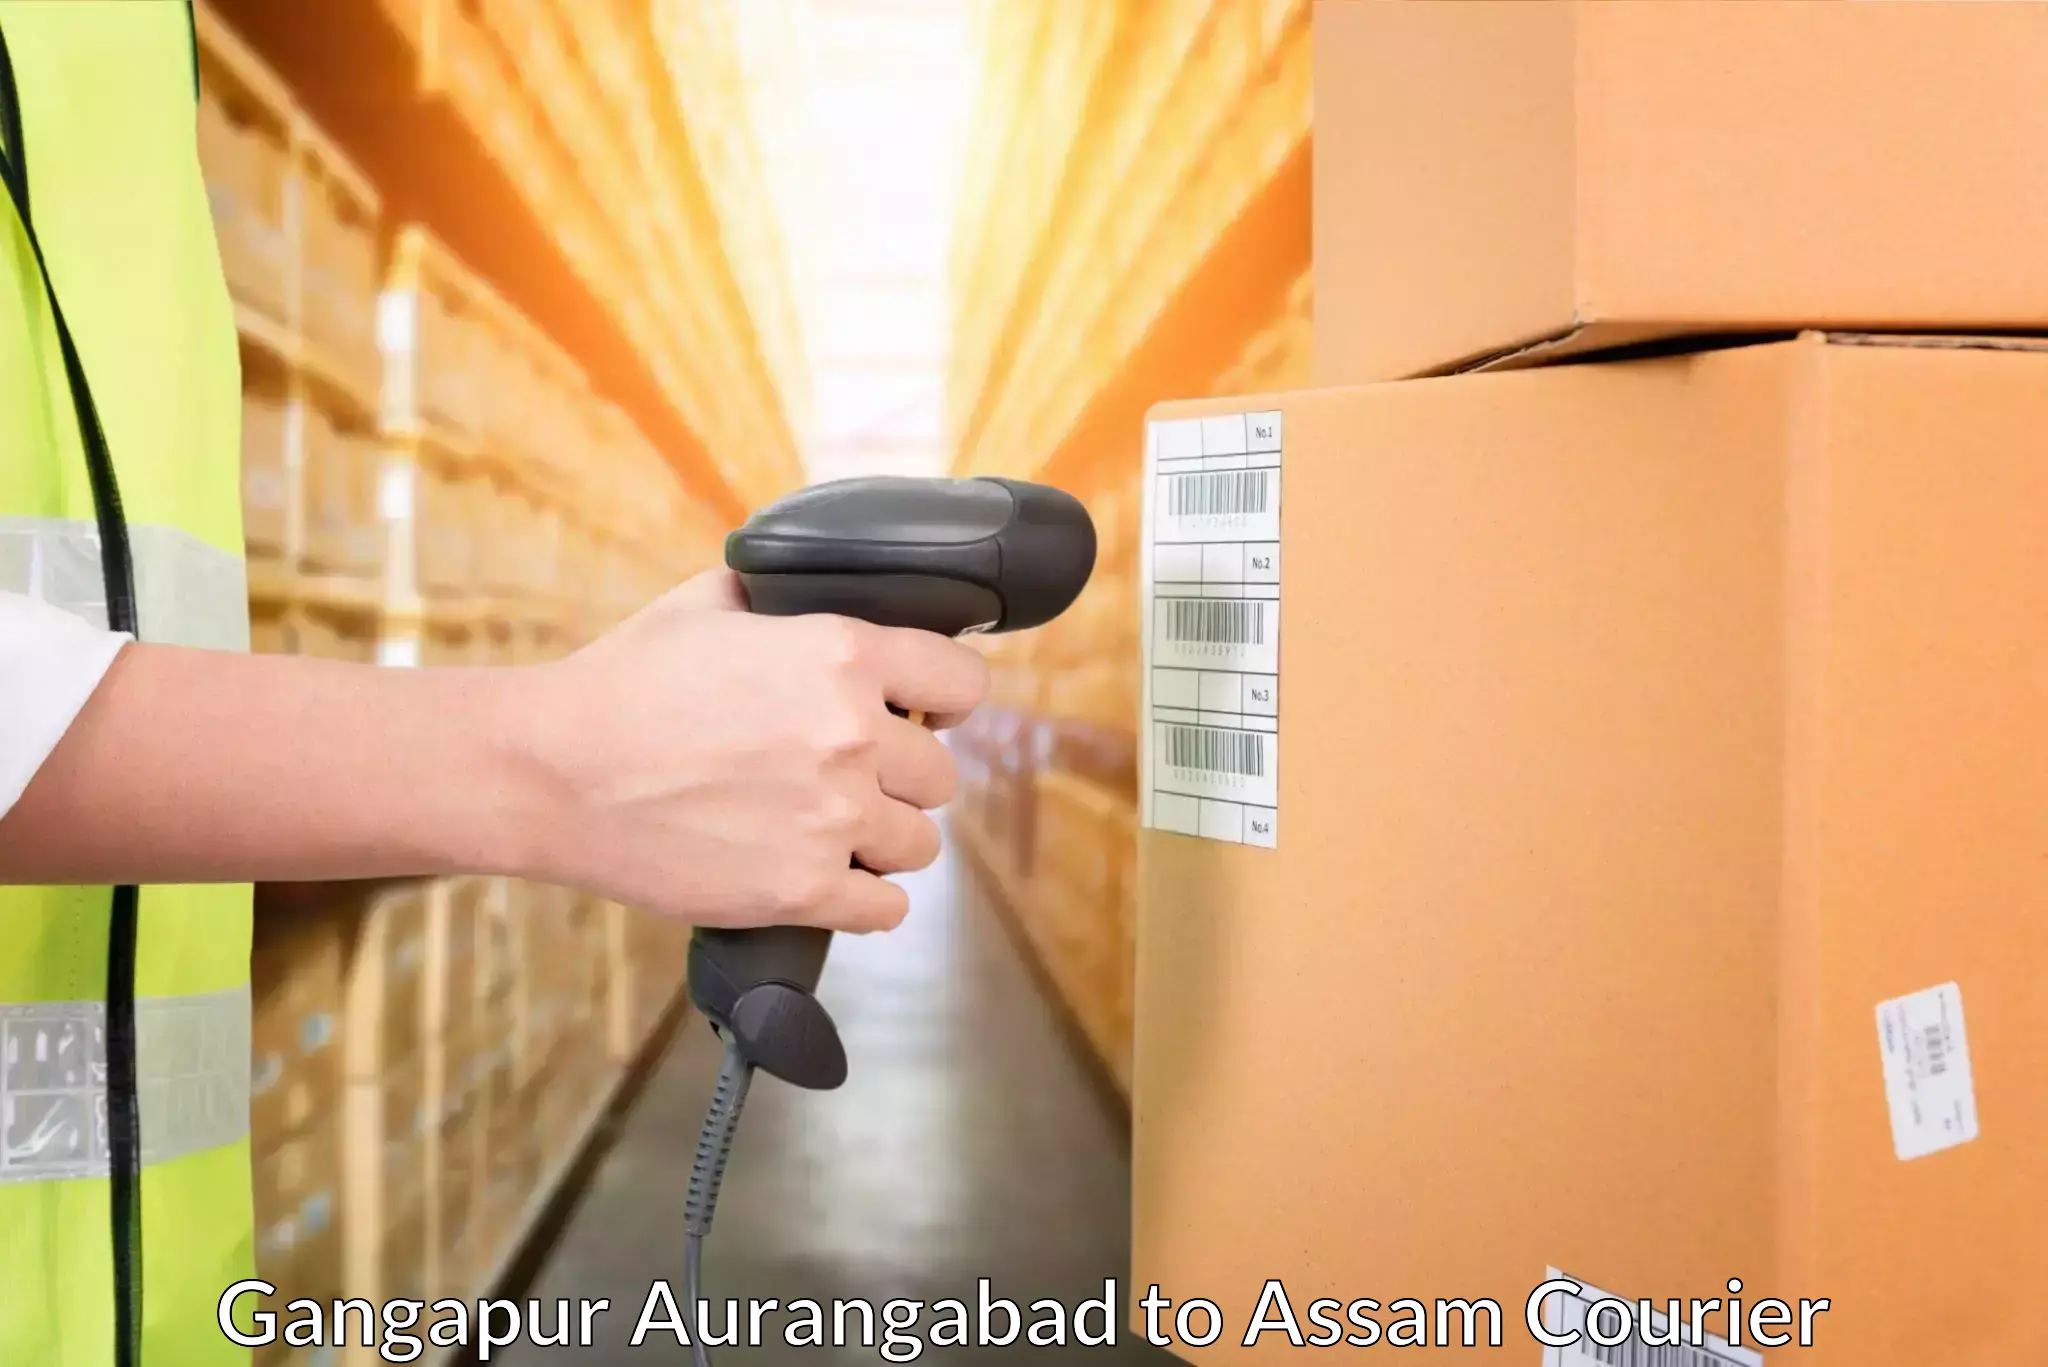 Express courier facilities Gangapur Aurangabad to Kamrup